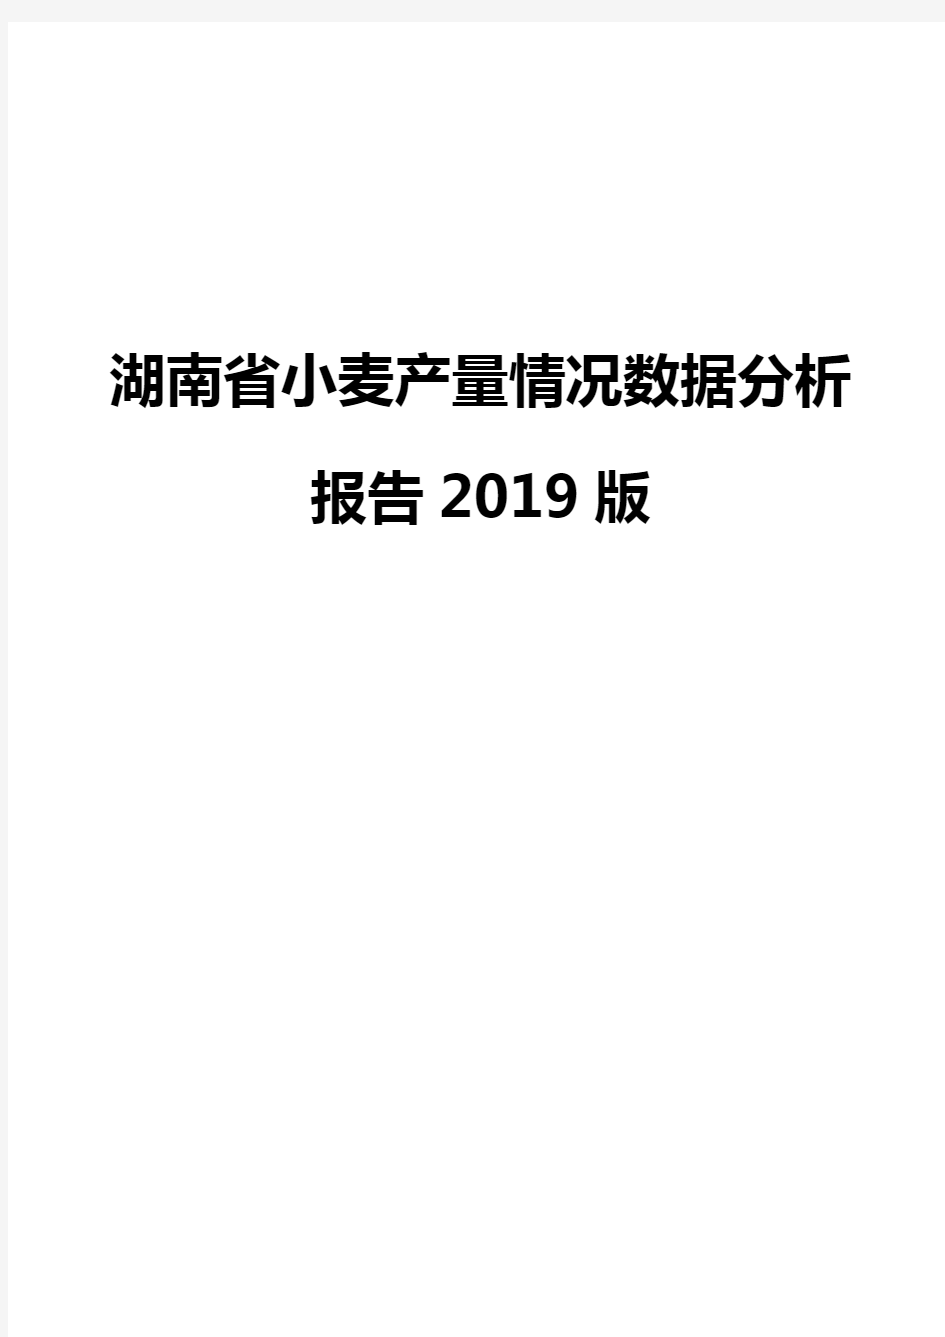 湖南省小麦产量情况数据分析报告2019版